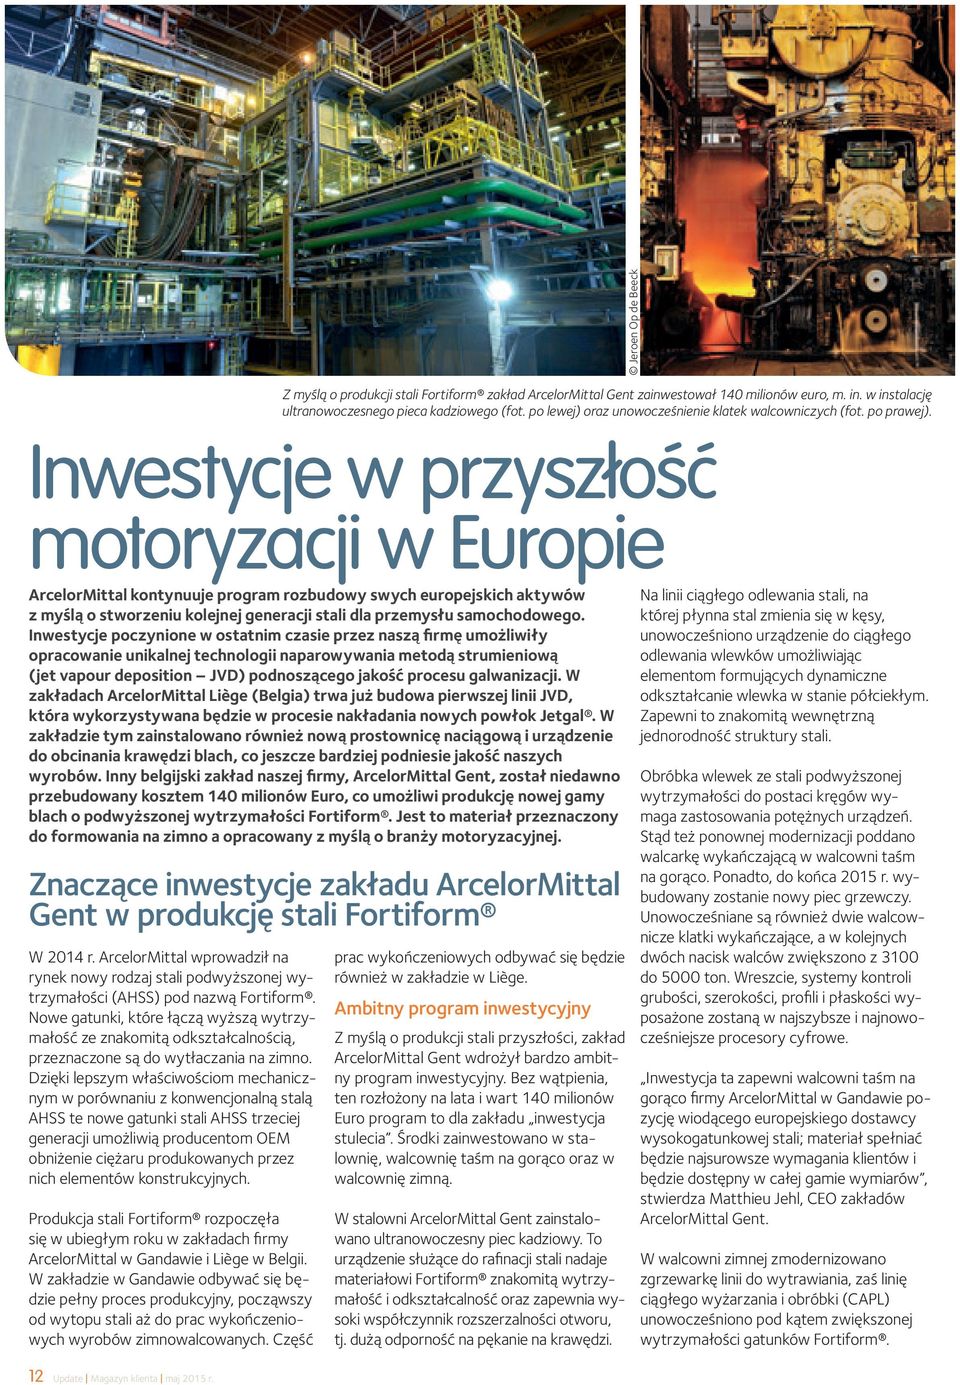 Inwestycje w przyszłość motoryzacji w Europie ArcelorMittal kontynuuje program rozbudowy swych europejskich aktywów z myślą o stworzeniu kolejnej generacji stali dla przemysłu samochodowego.